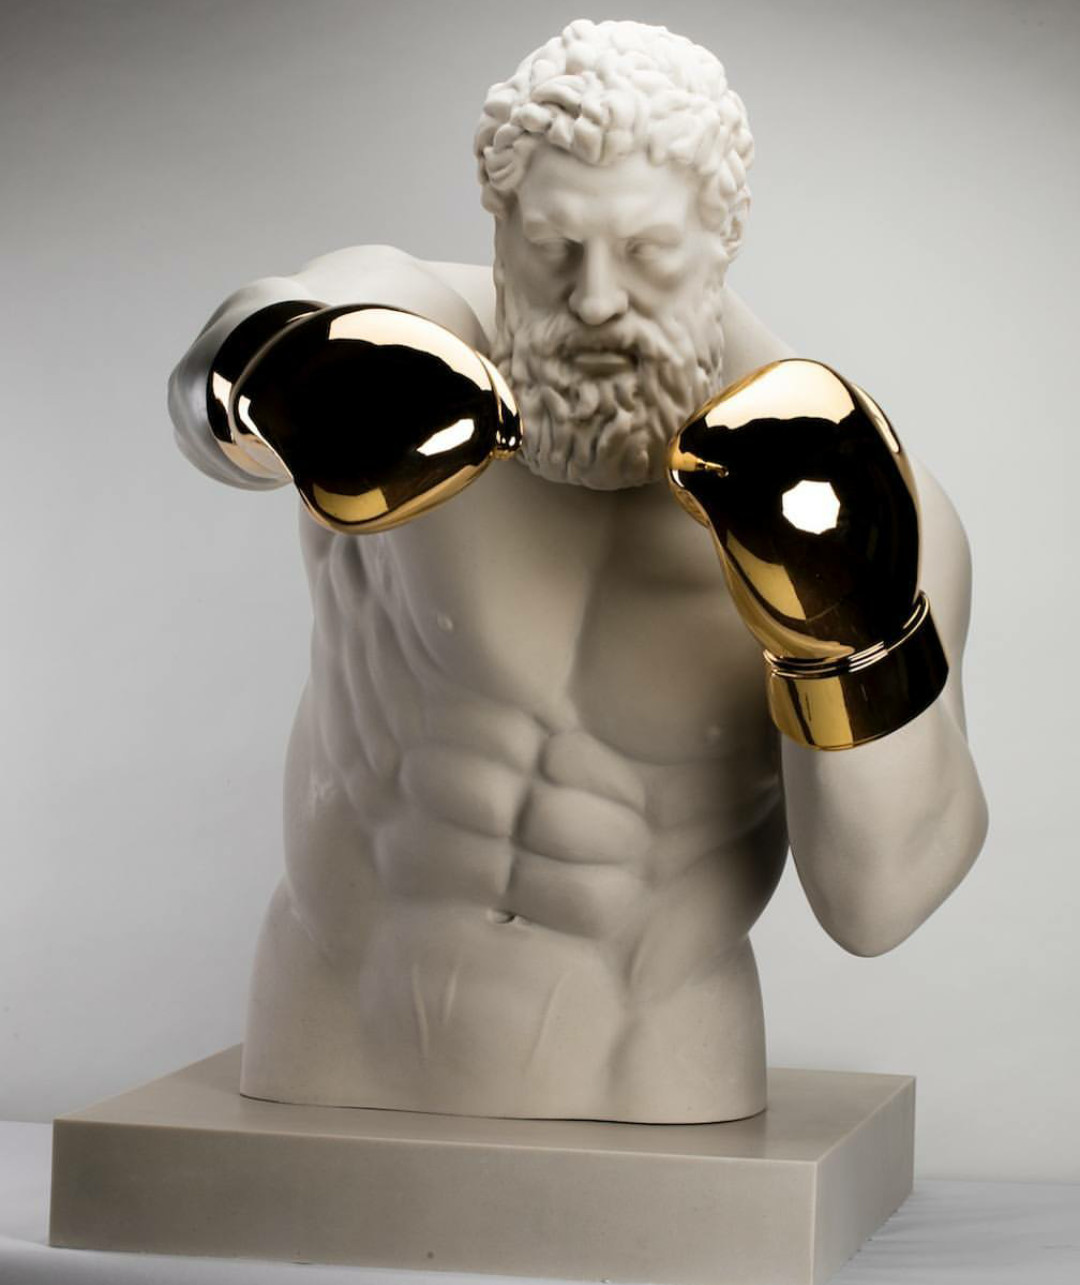 1080x1285, 146 Kb / боксер, перчатки, золотые, статуя, скульптура